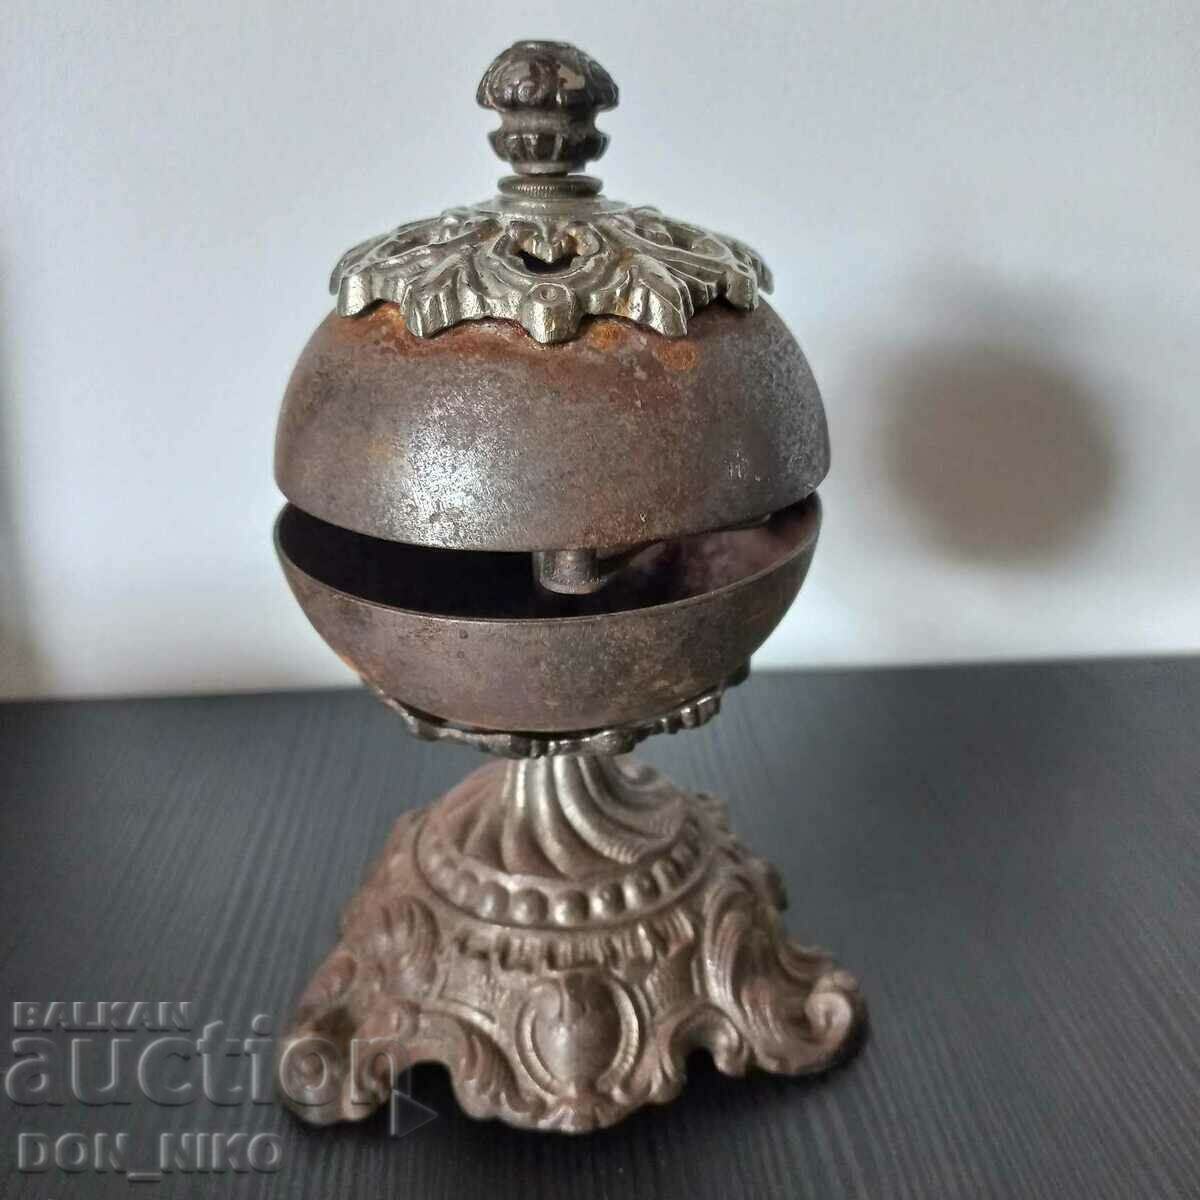 Venetian Servant Bell 19th century, Table bell